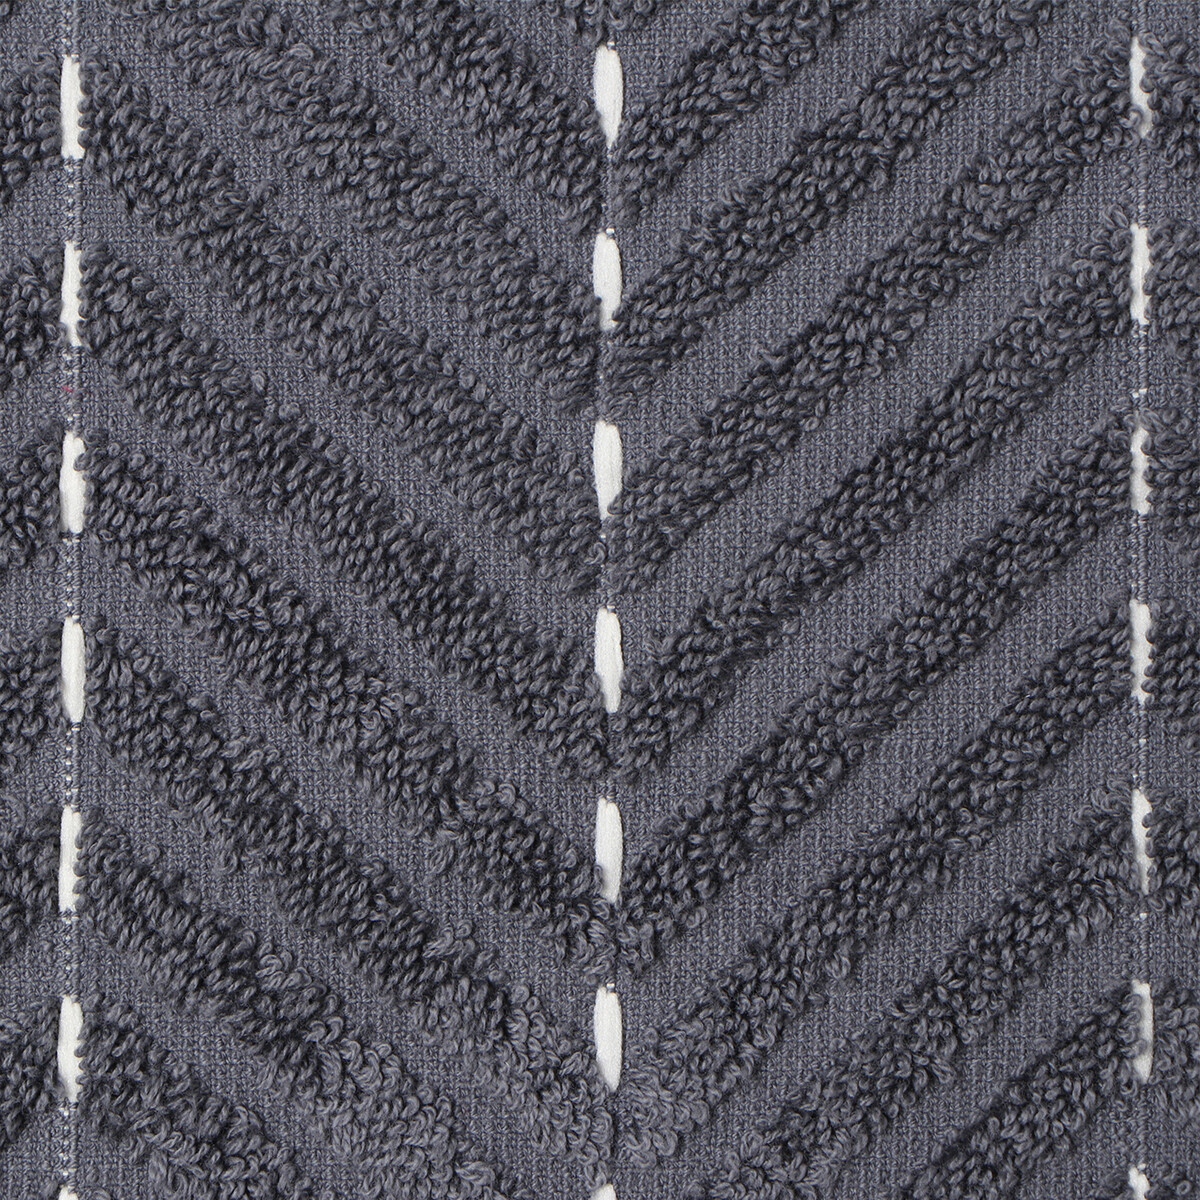 Коврик махровый этель lines, цв. темно-серый, 50х70 см, 100% хлопок, 750 г/м2 Этель, цвет бежевый 08324606 - фото 3